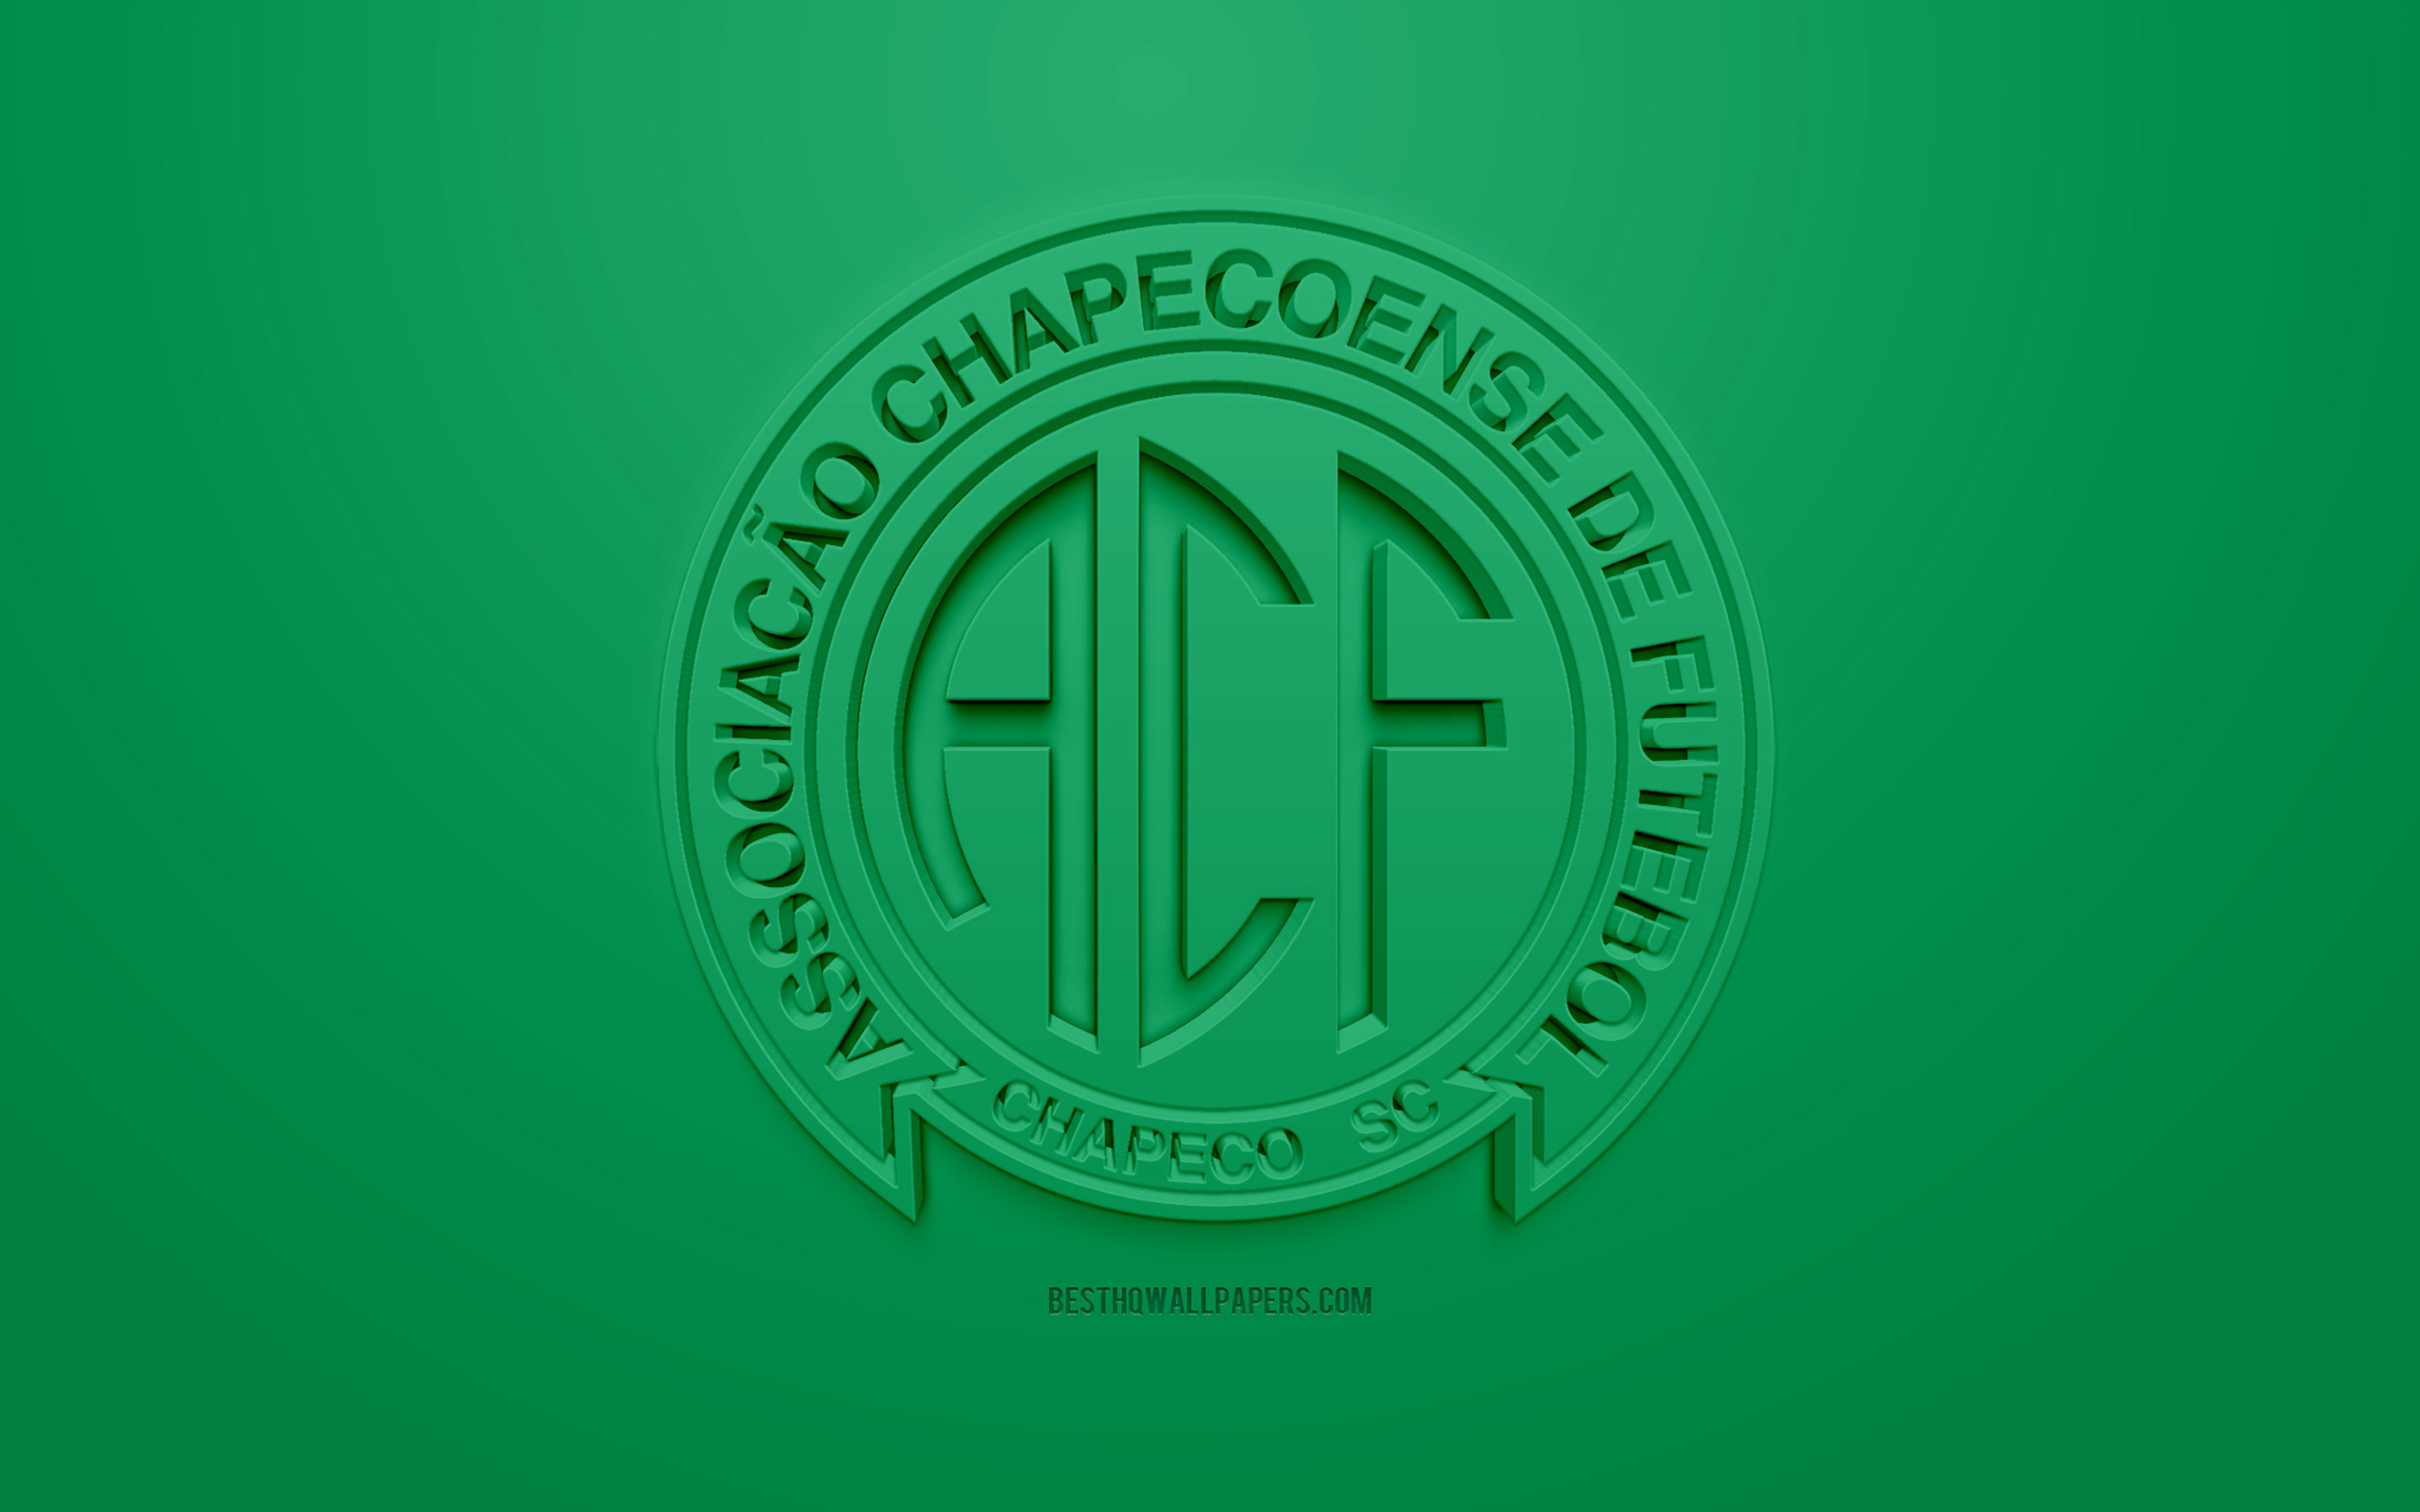 Chapecoense, Creative 3d Logo, Green Background, 3d , HD Wallpaper & Backgrounds